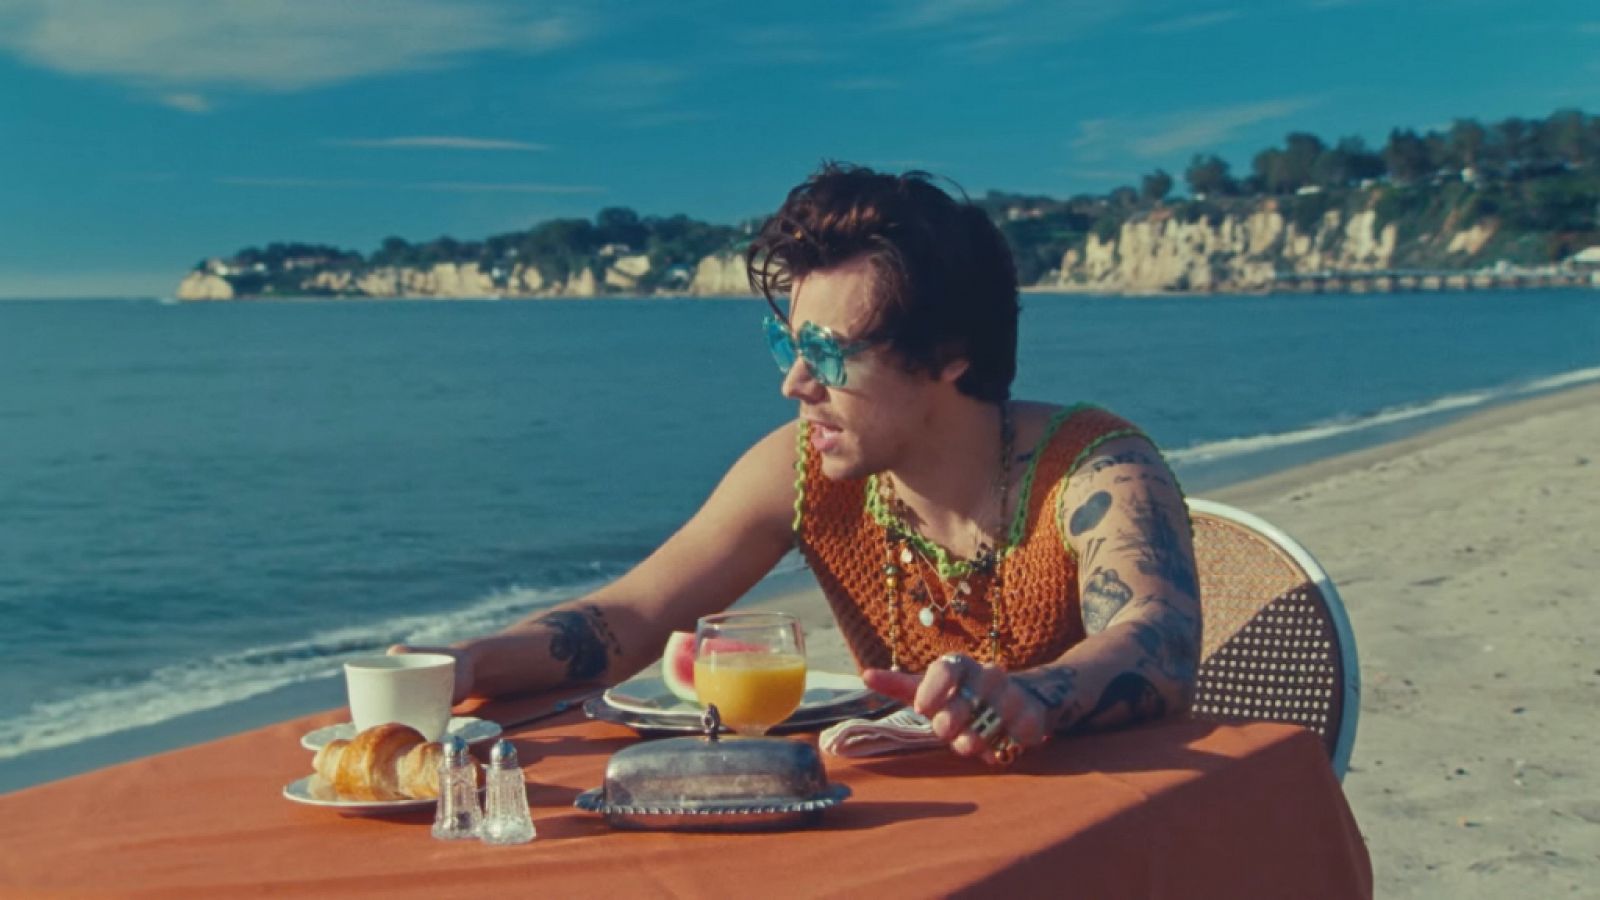  Harry Styles en el videoclip de "Watermelon Sugar"